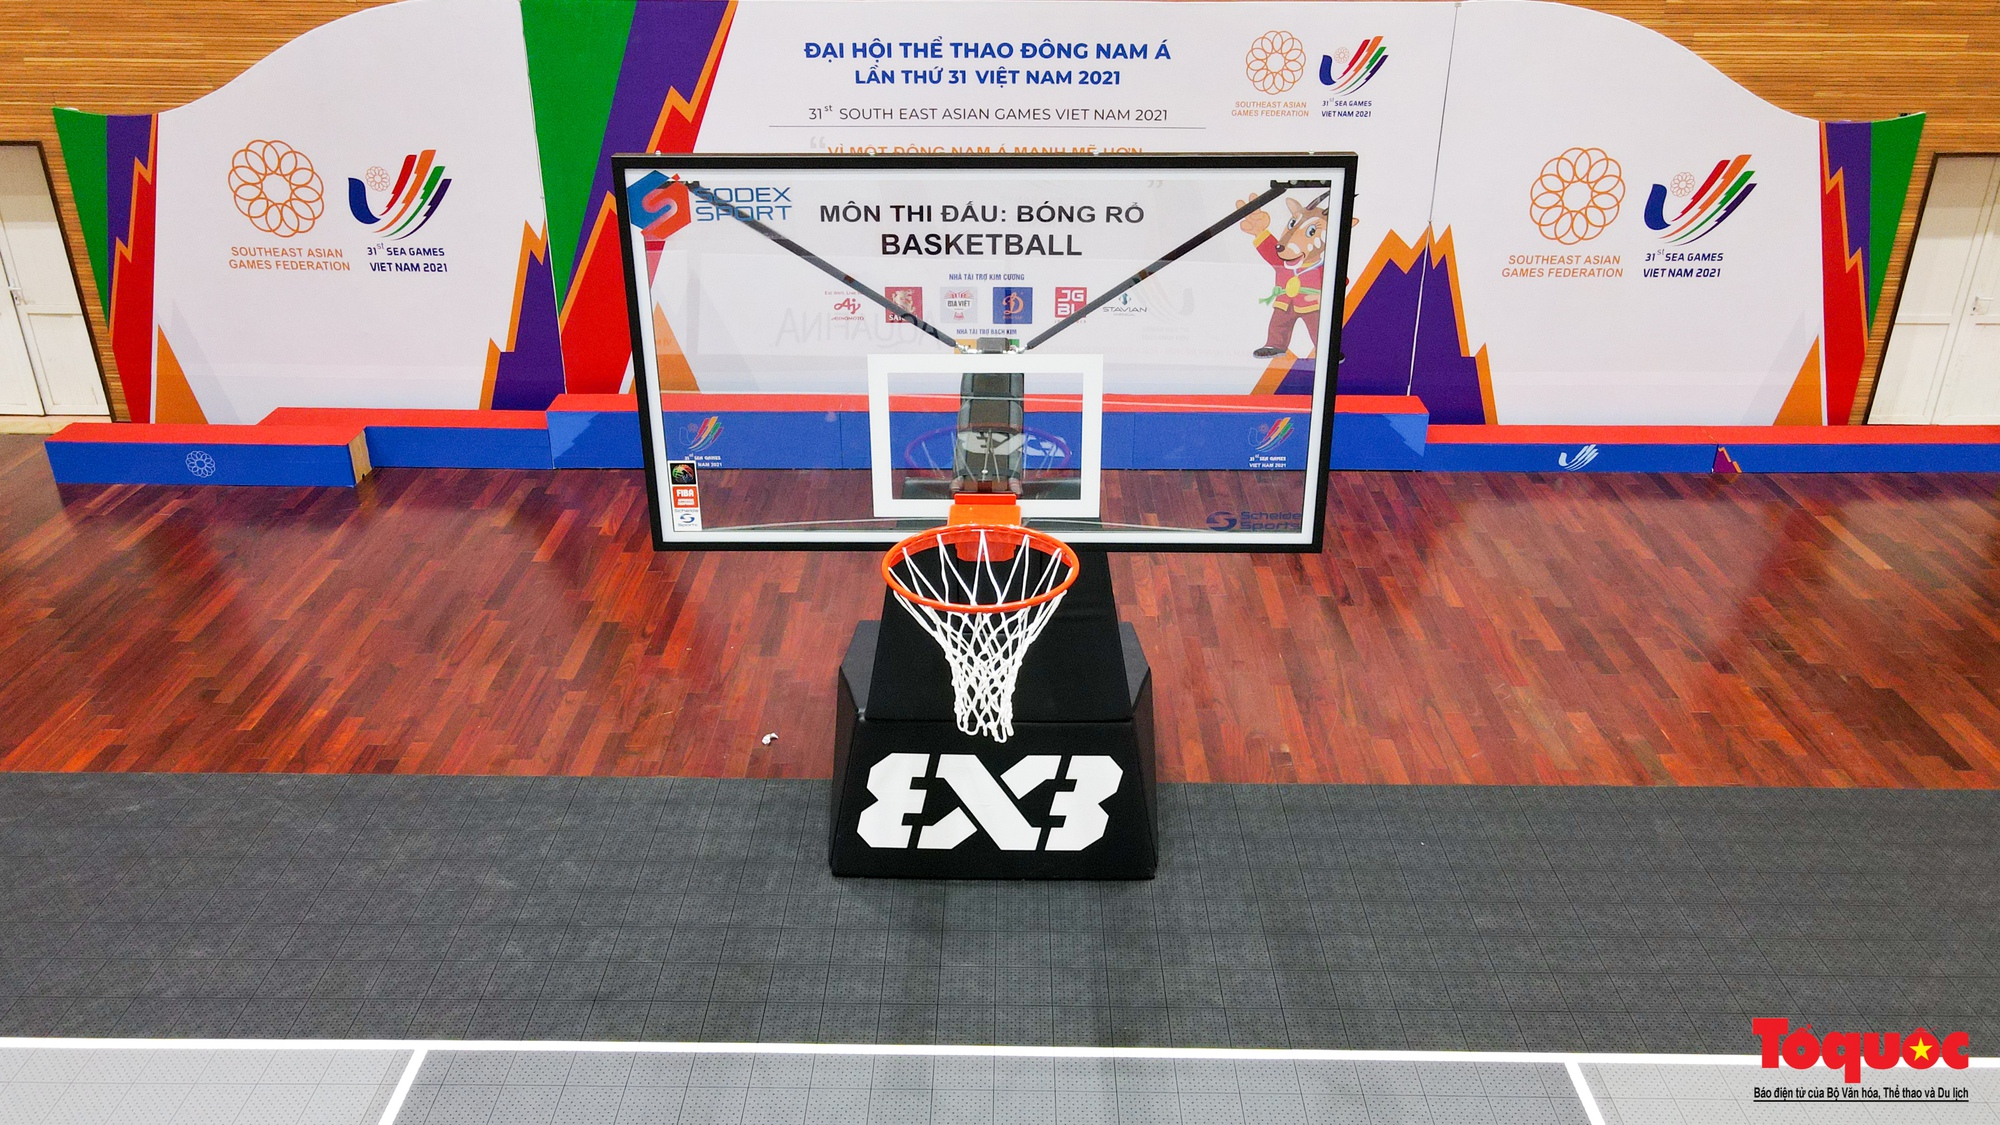 Cận cảnh nơi diễn ra môn bóng rổ SEA Games 31 - Ảnh 8.